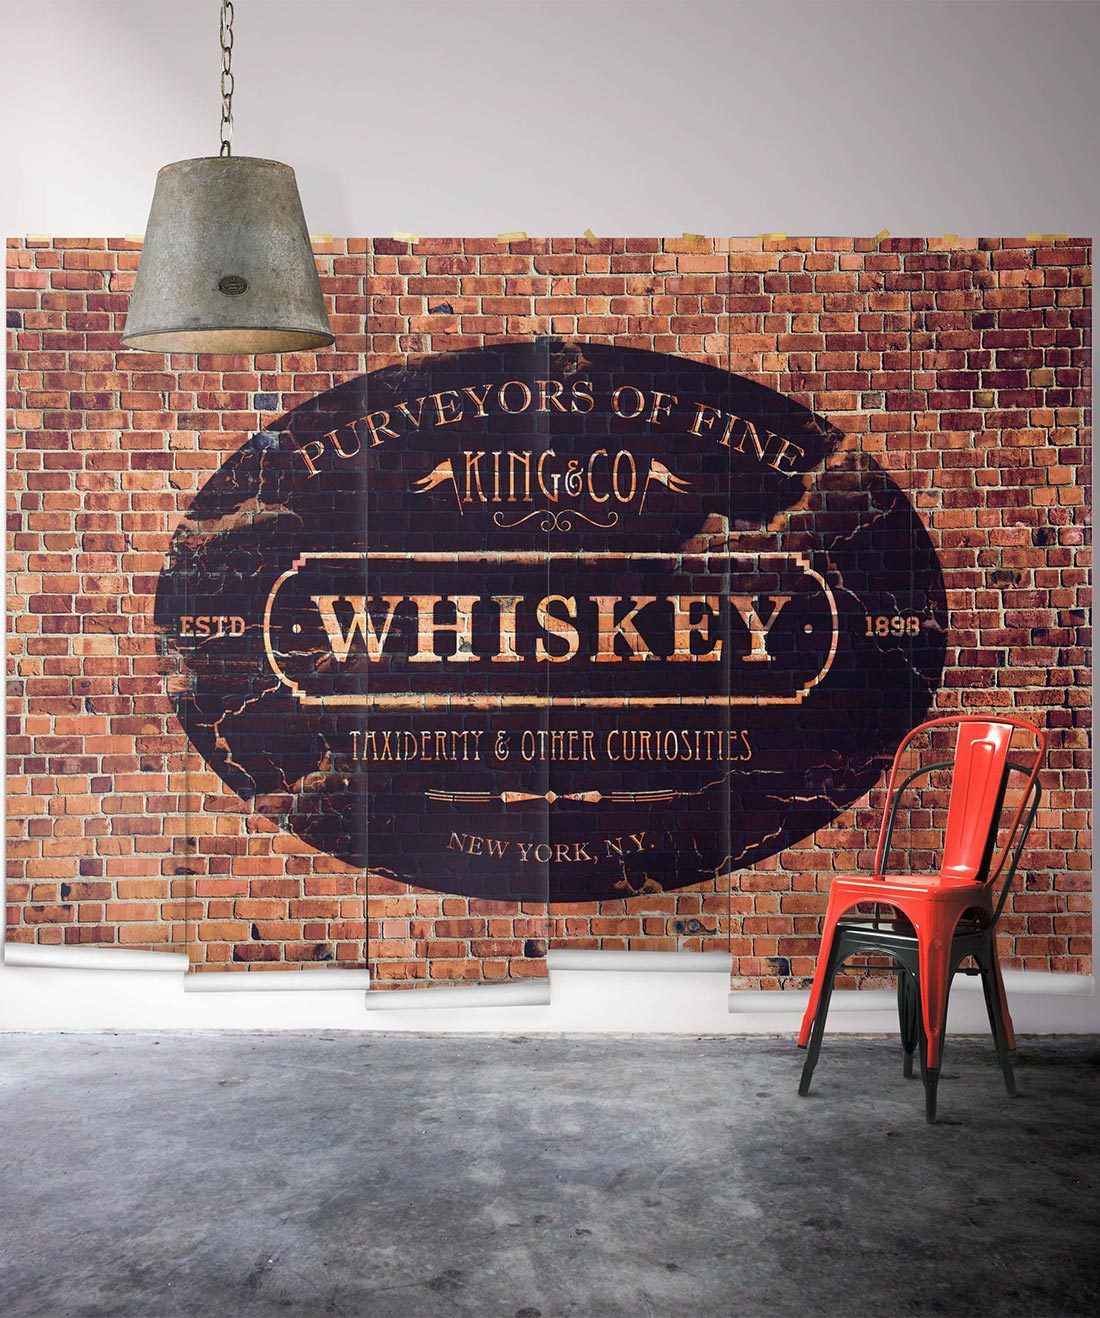 King & Co whiskey mural